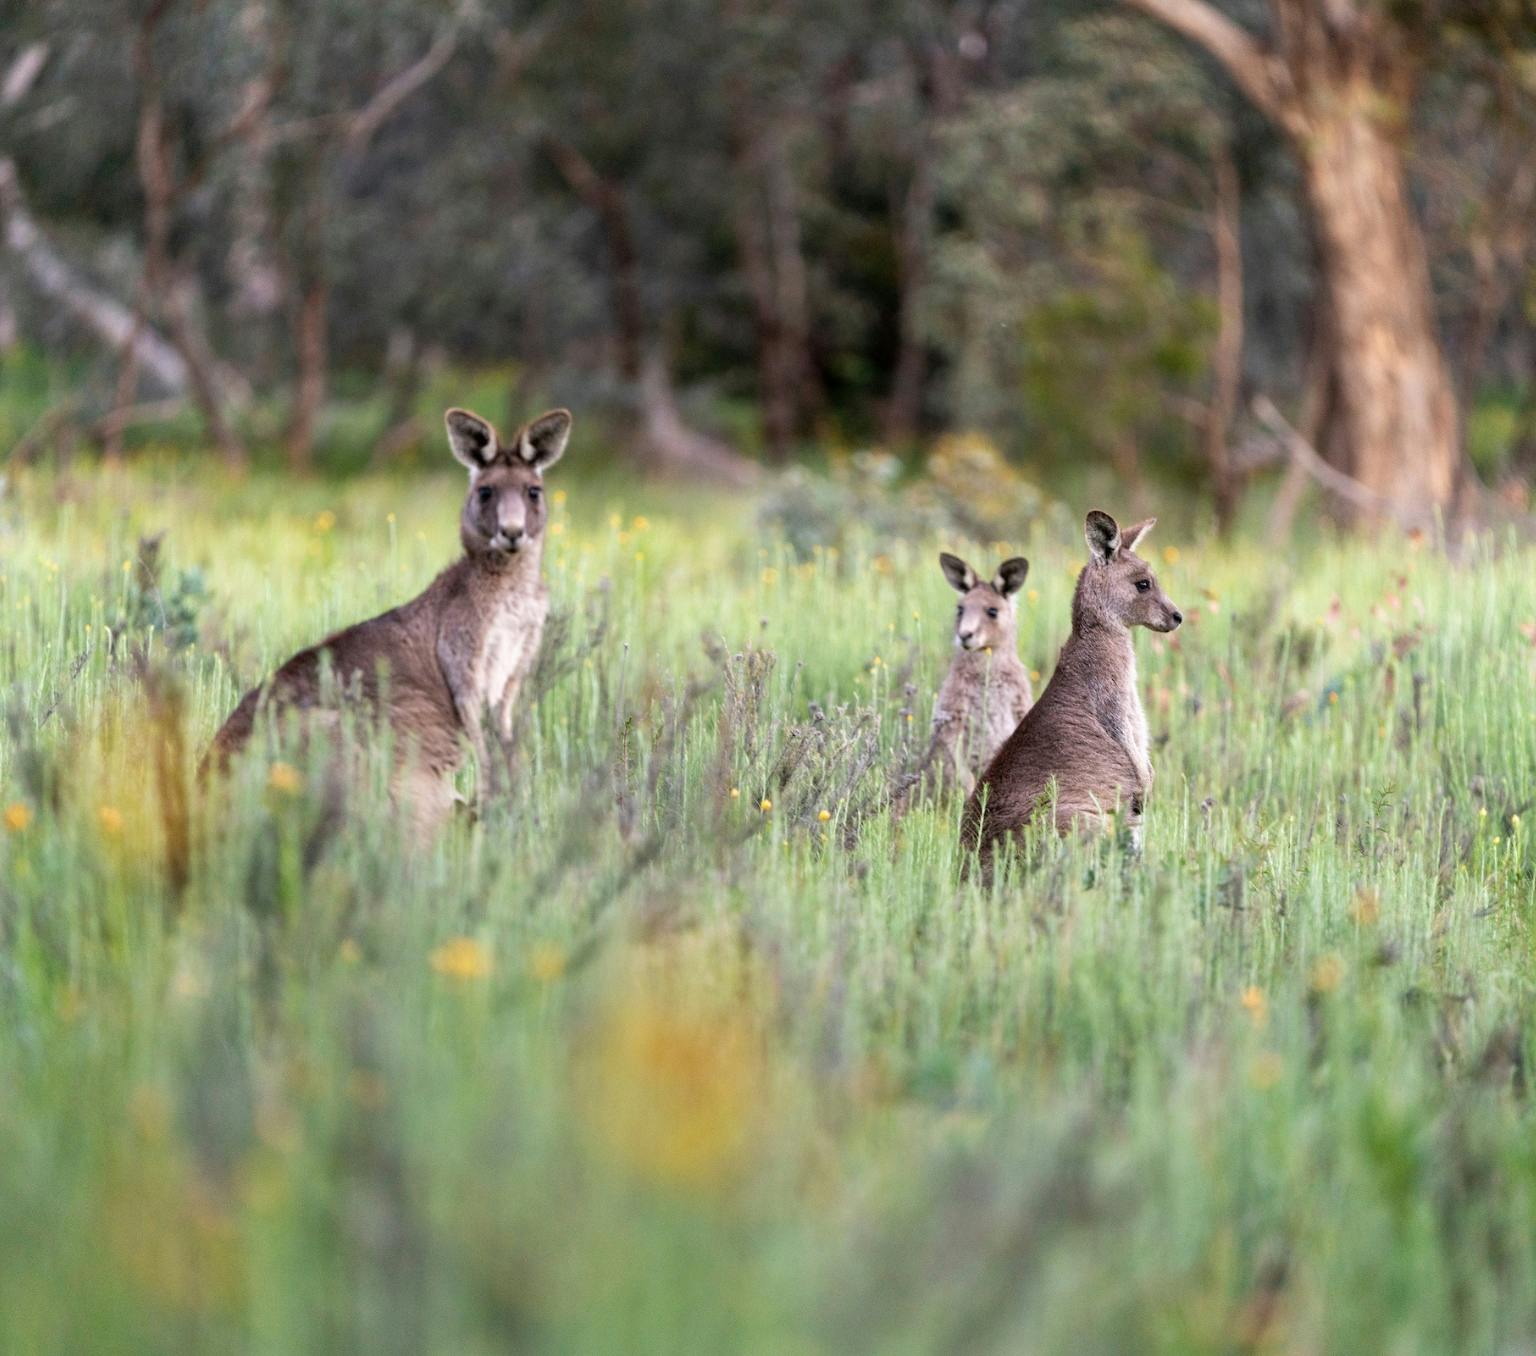 Eastern grey kangaroos in a field